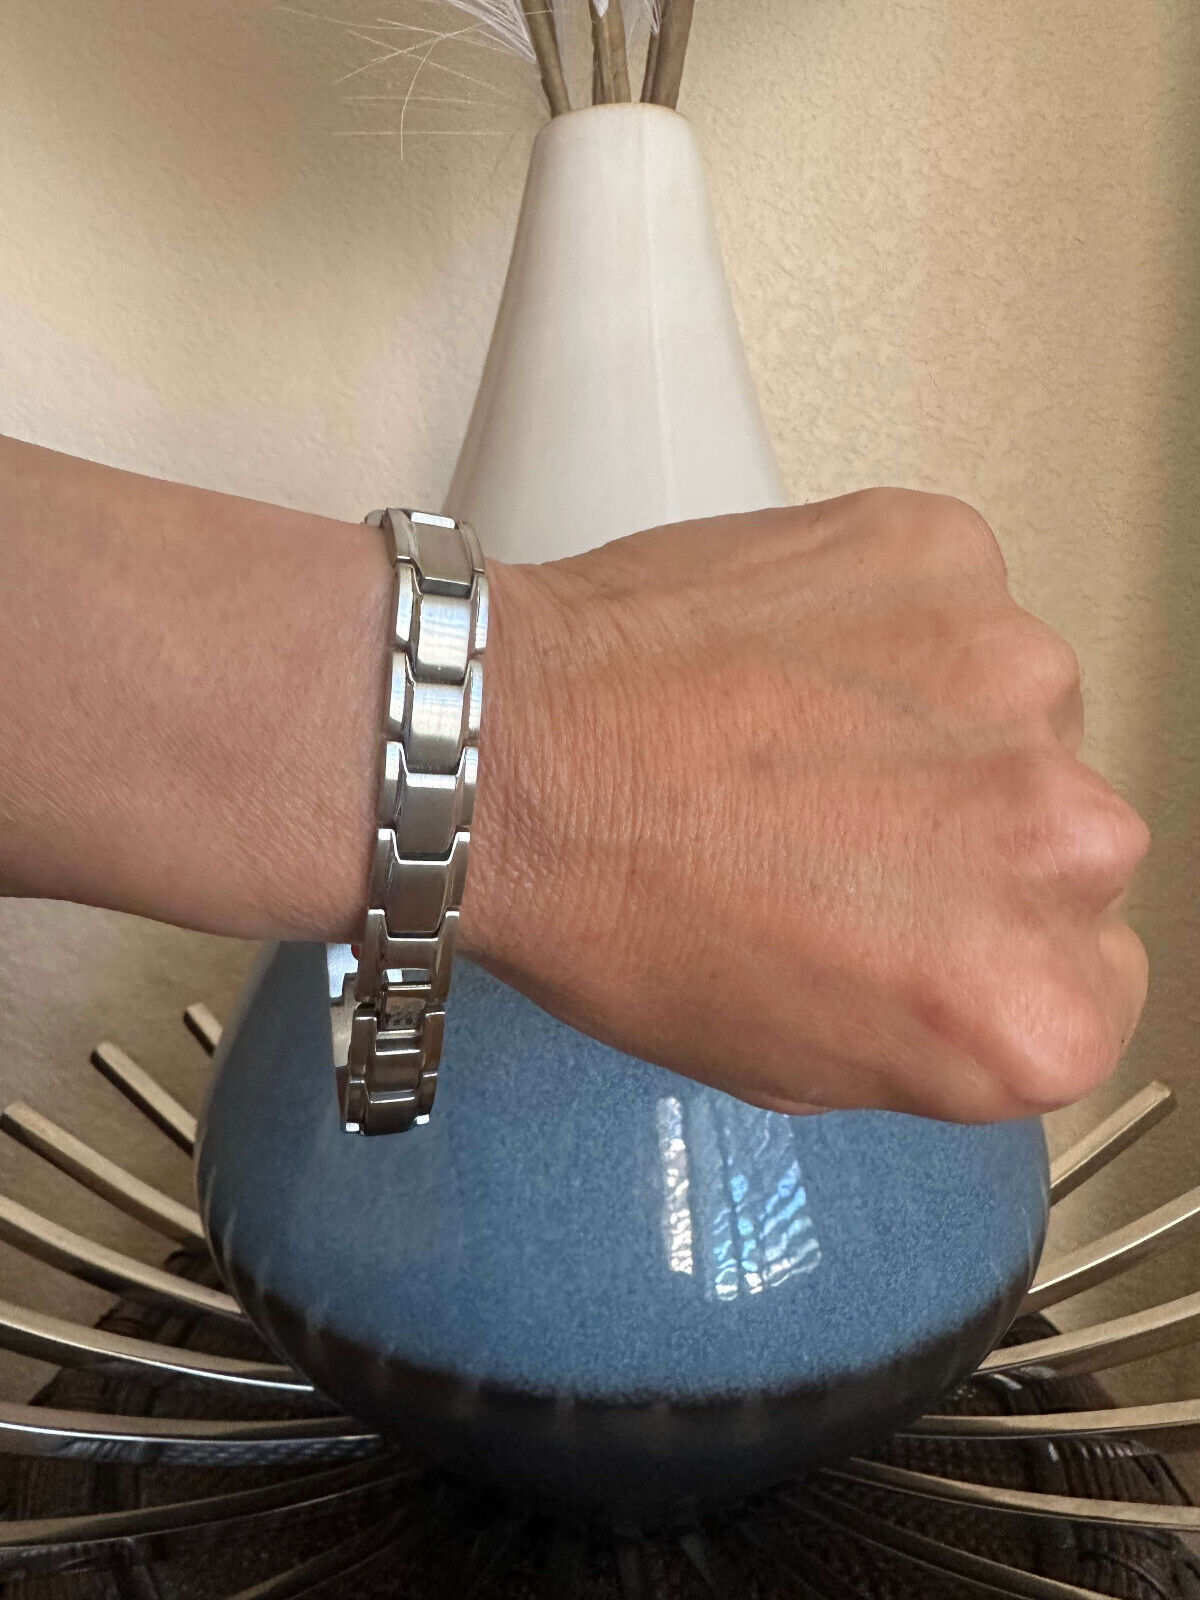 Amazing Magnetic Bracelet 4 Elements Restore Energy Balance Power Christmas Gift Unbranded - фотография #3